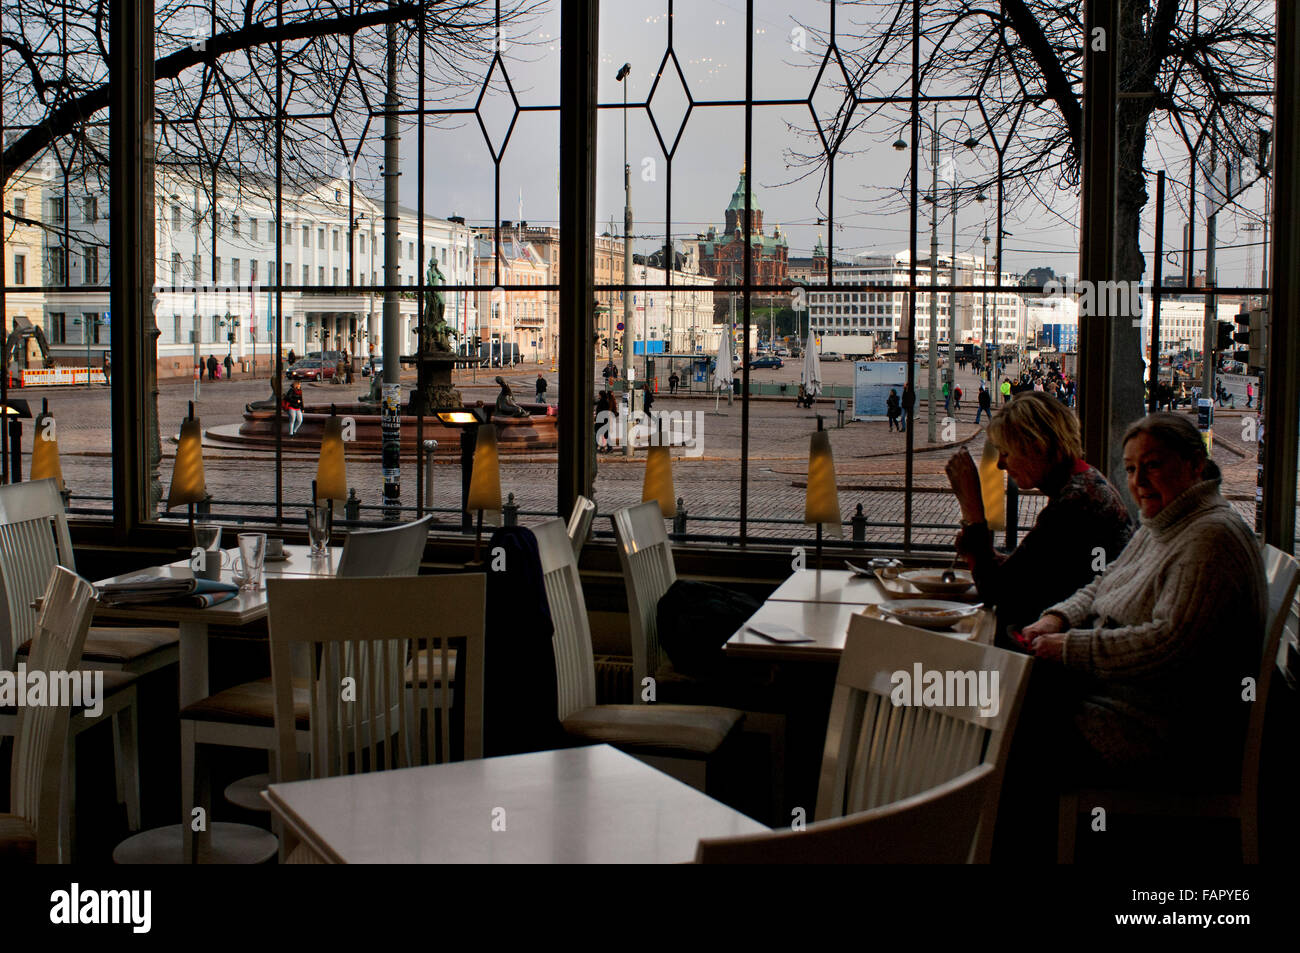 All'interno di Havis Amanda ristorante, Helsinki, Finlandia. Un paio di mangiare al ristorante Havis Amanda, uno dei più prestigiosi i Foto Stock